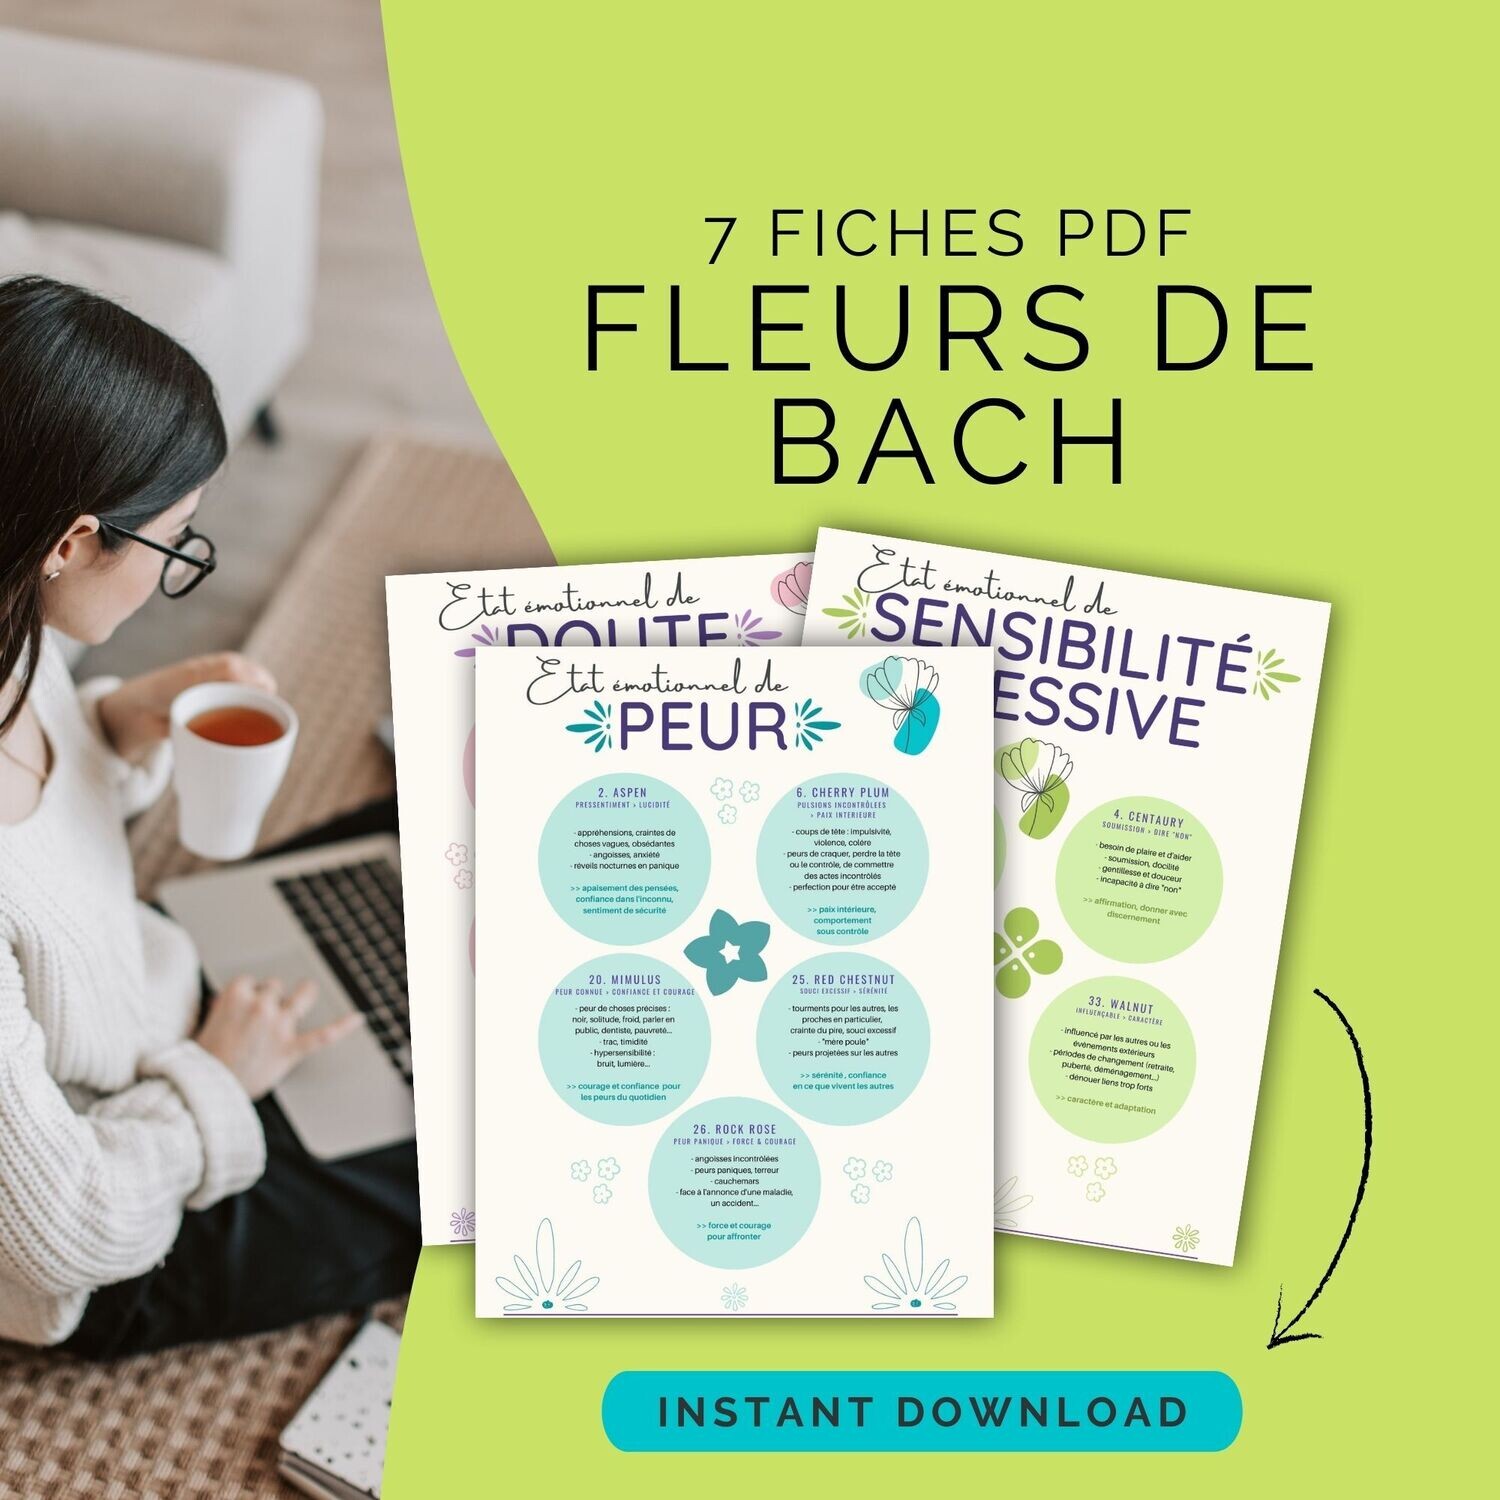 FLEURS DE BACH PDF